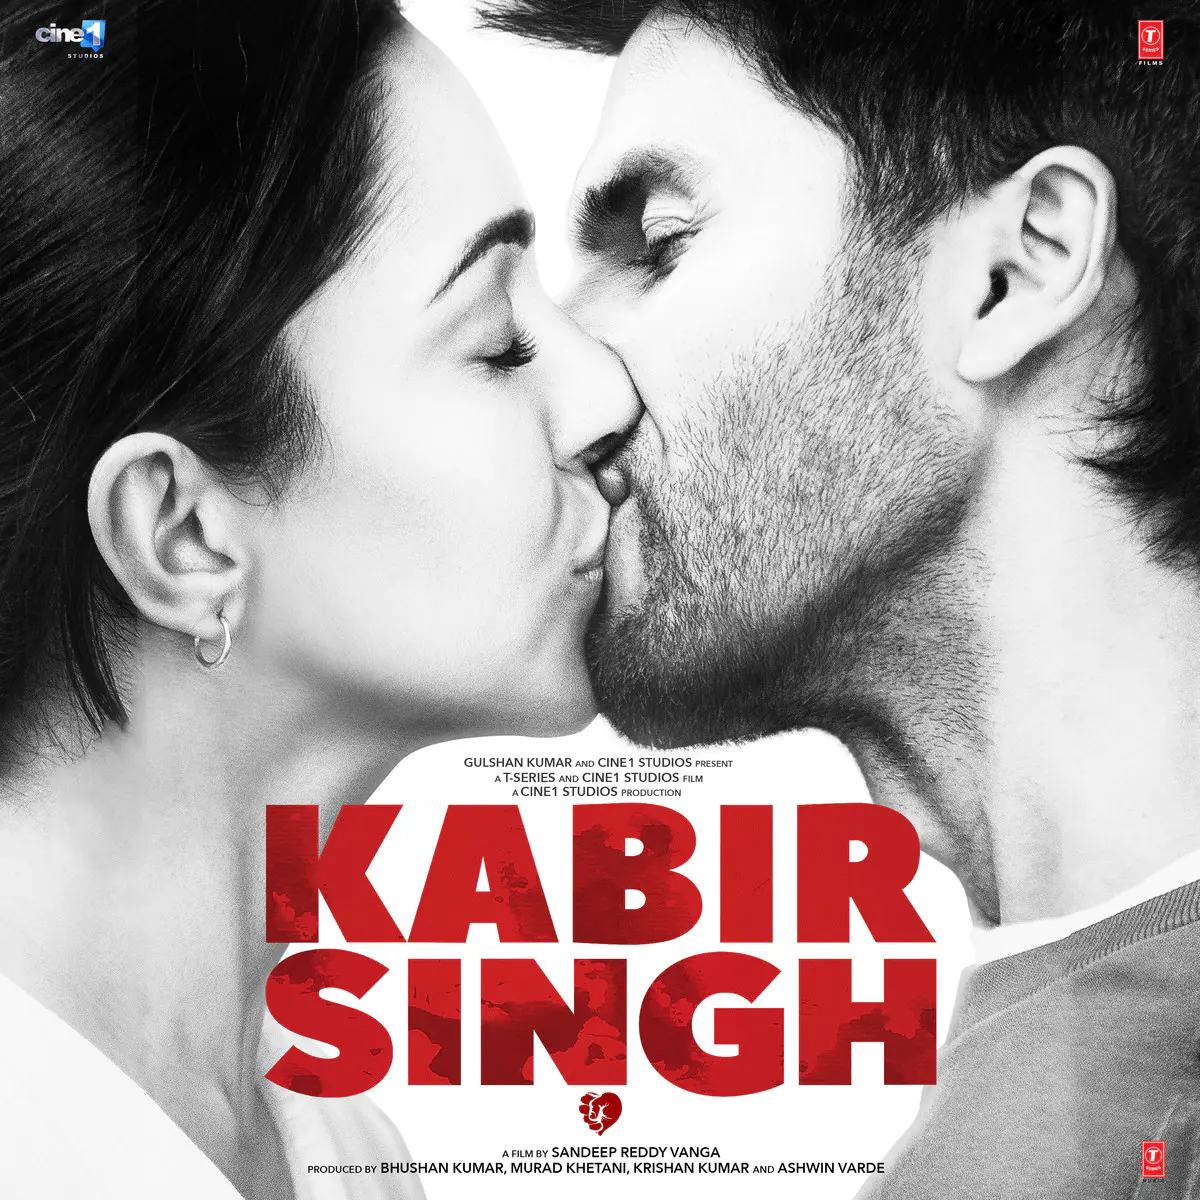 Kabir Singh Songs Download Kabir Singh Mp3 Songs Online Free On Gaana Com